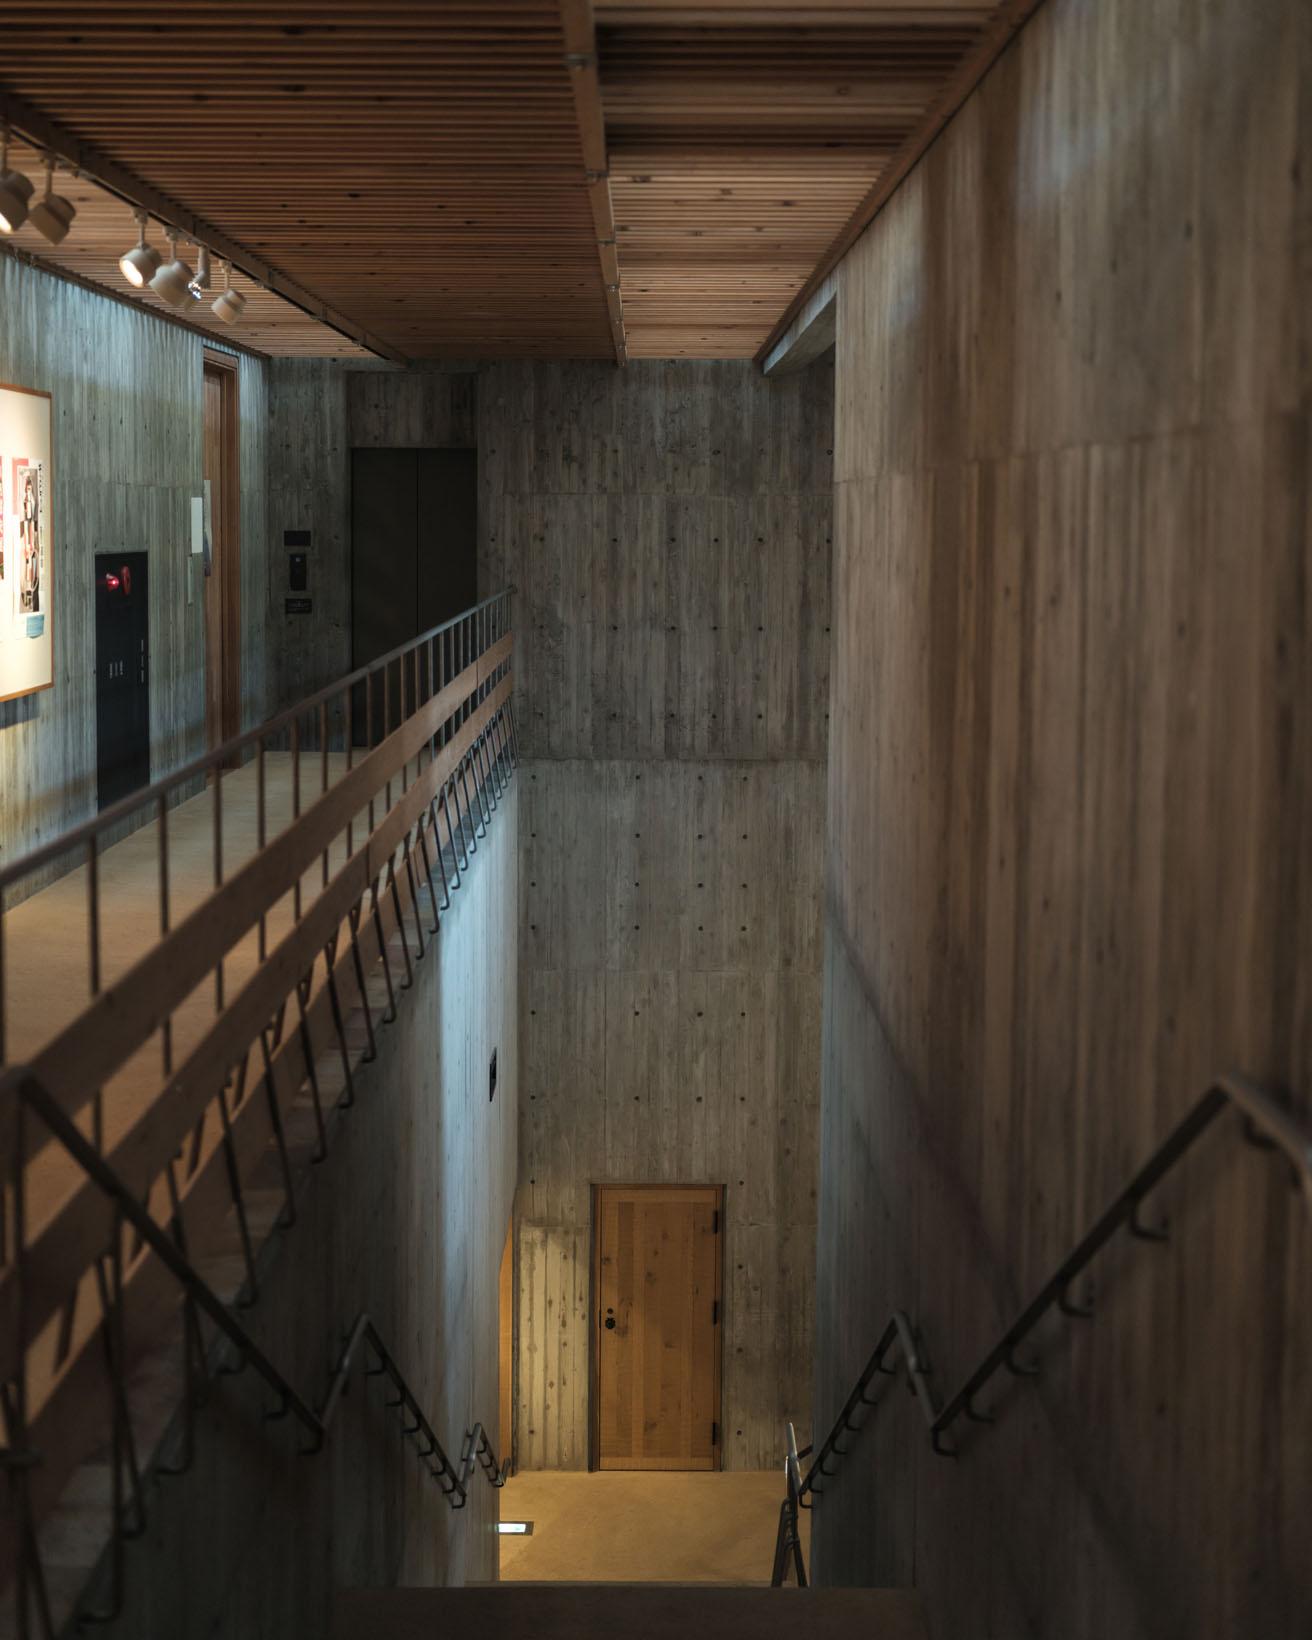 1階奥の階段から2階にかけてのコンクリートは木目の模様。型枠に杉板を張って作られている。